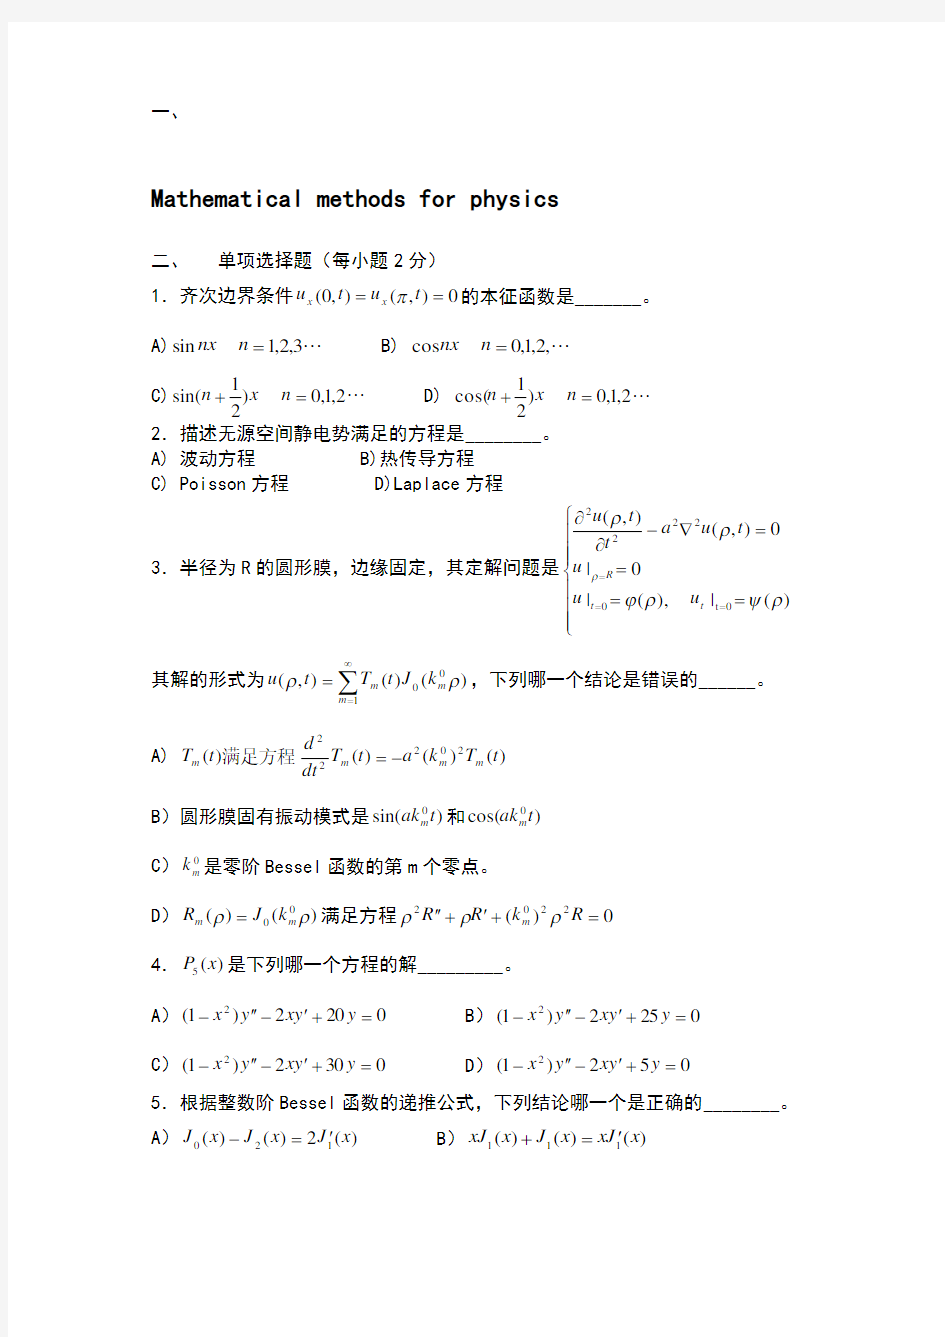 数学物理方法期末考试试题典型汇总